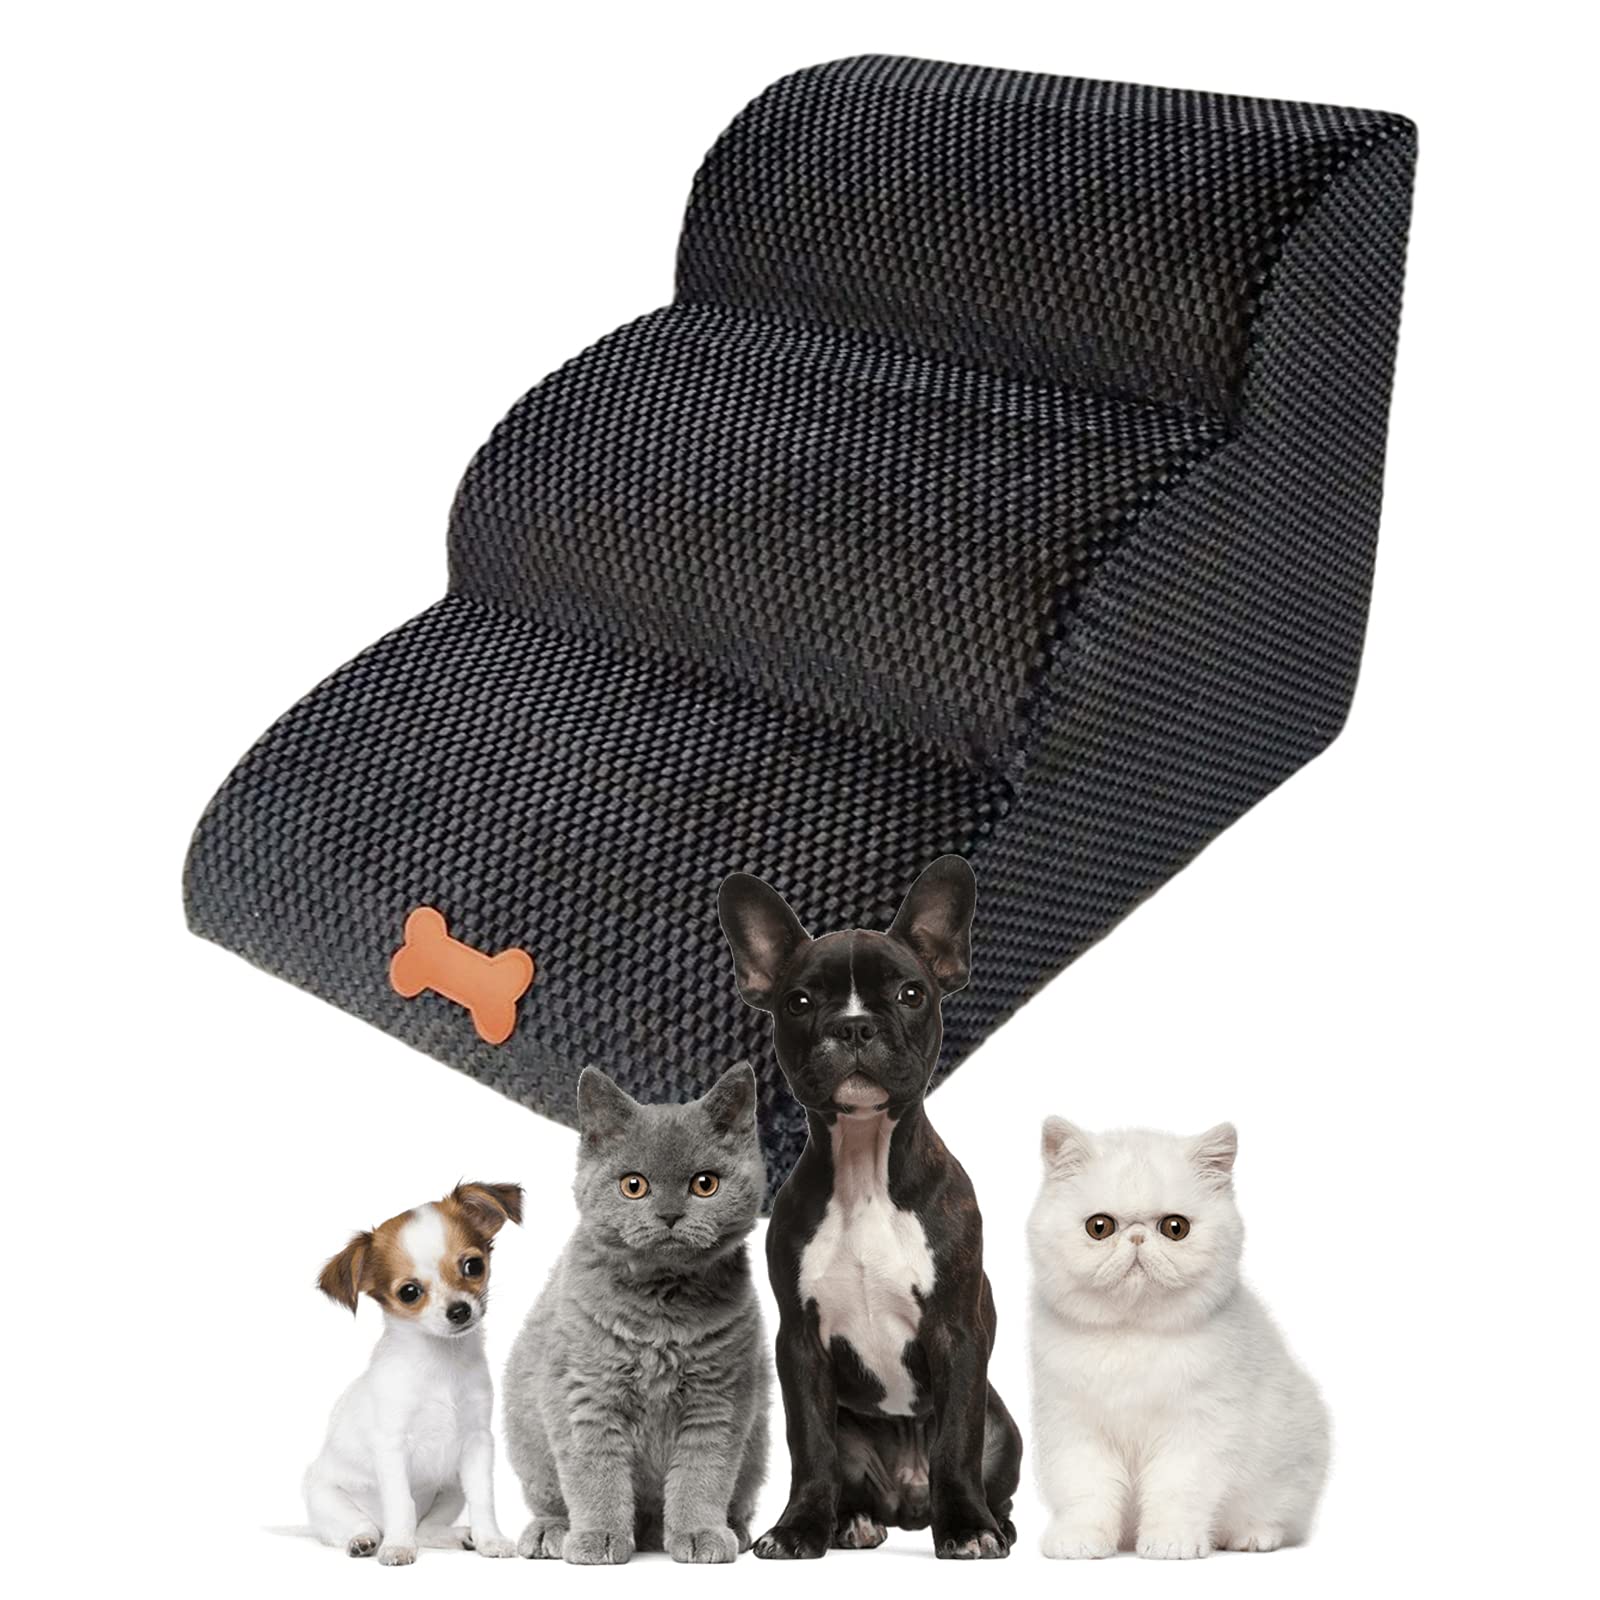 Bounabay Haustiertreppe für kleine Hunde, 3 Stufen für Hunde und Katzen, Bett mit abnehmbarem Bezug, tragbare Hunderampe für Hochbett/Sofa im Innenbereich, hochelastischer Schwamm, bis zu 27 kg